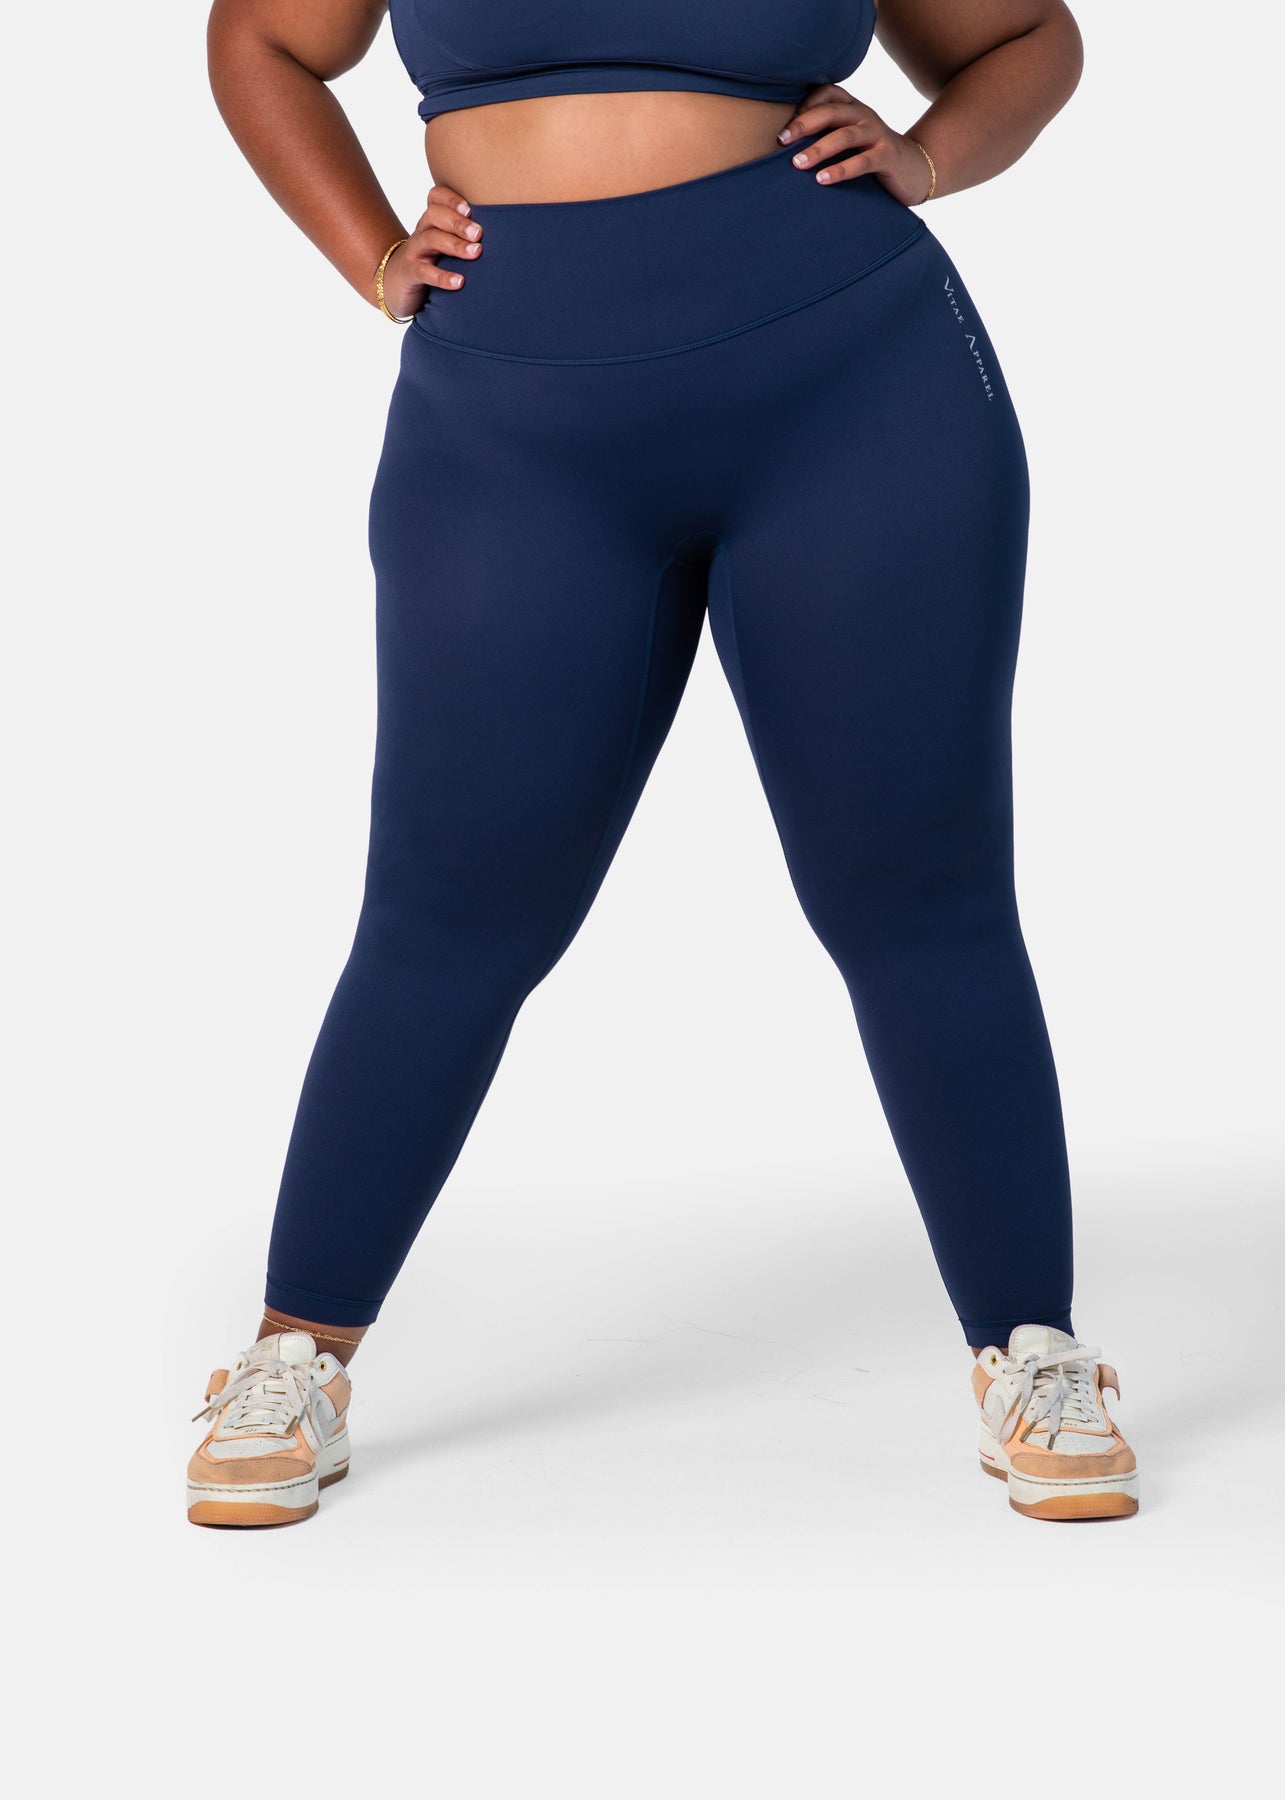 Nike Black Girls Leggings Size 6(M- 5/6 Years) Logo Just Do It